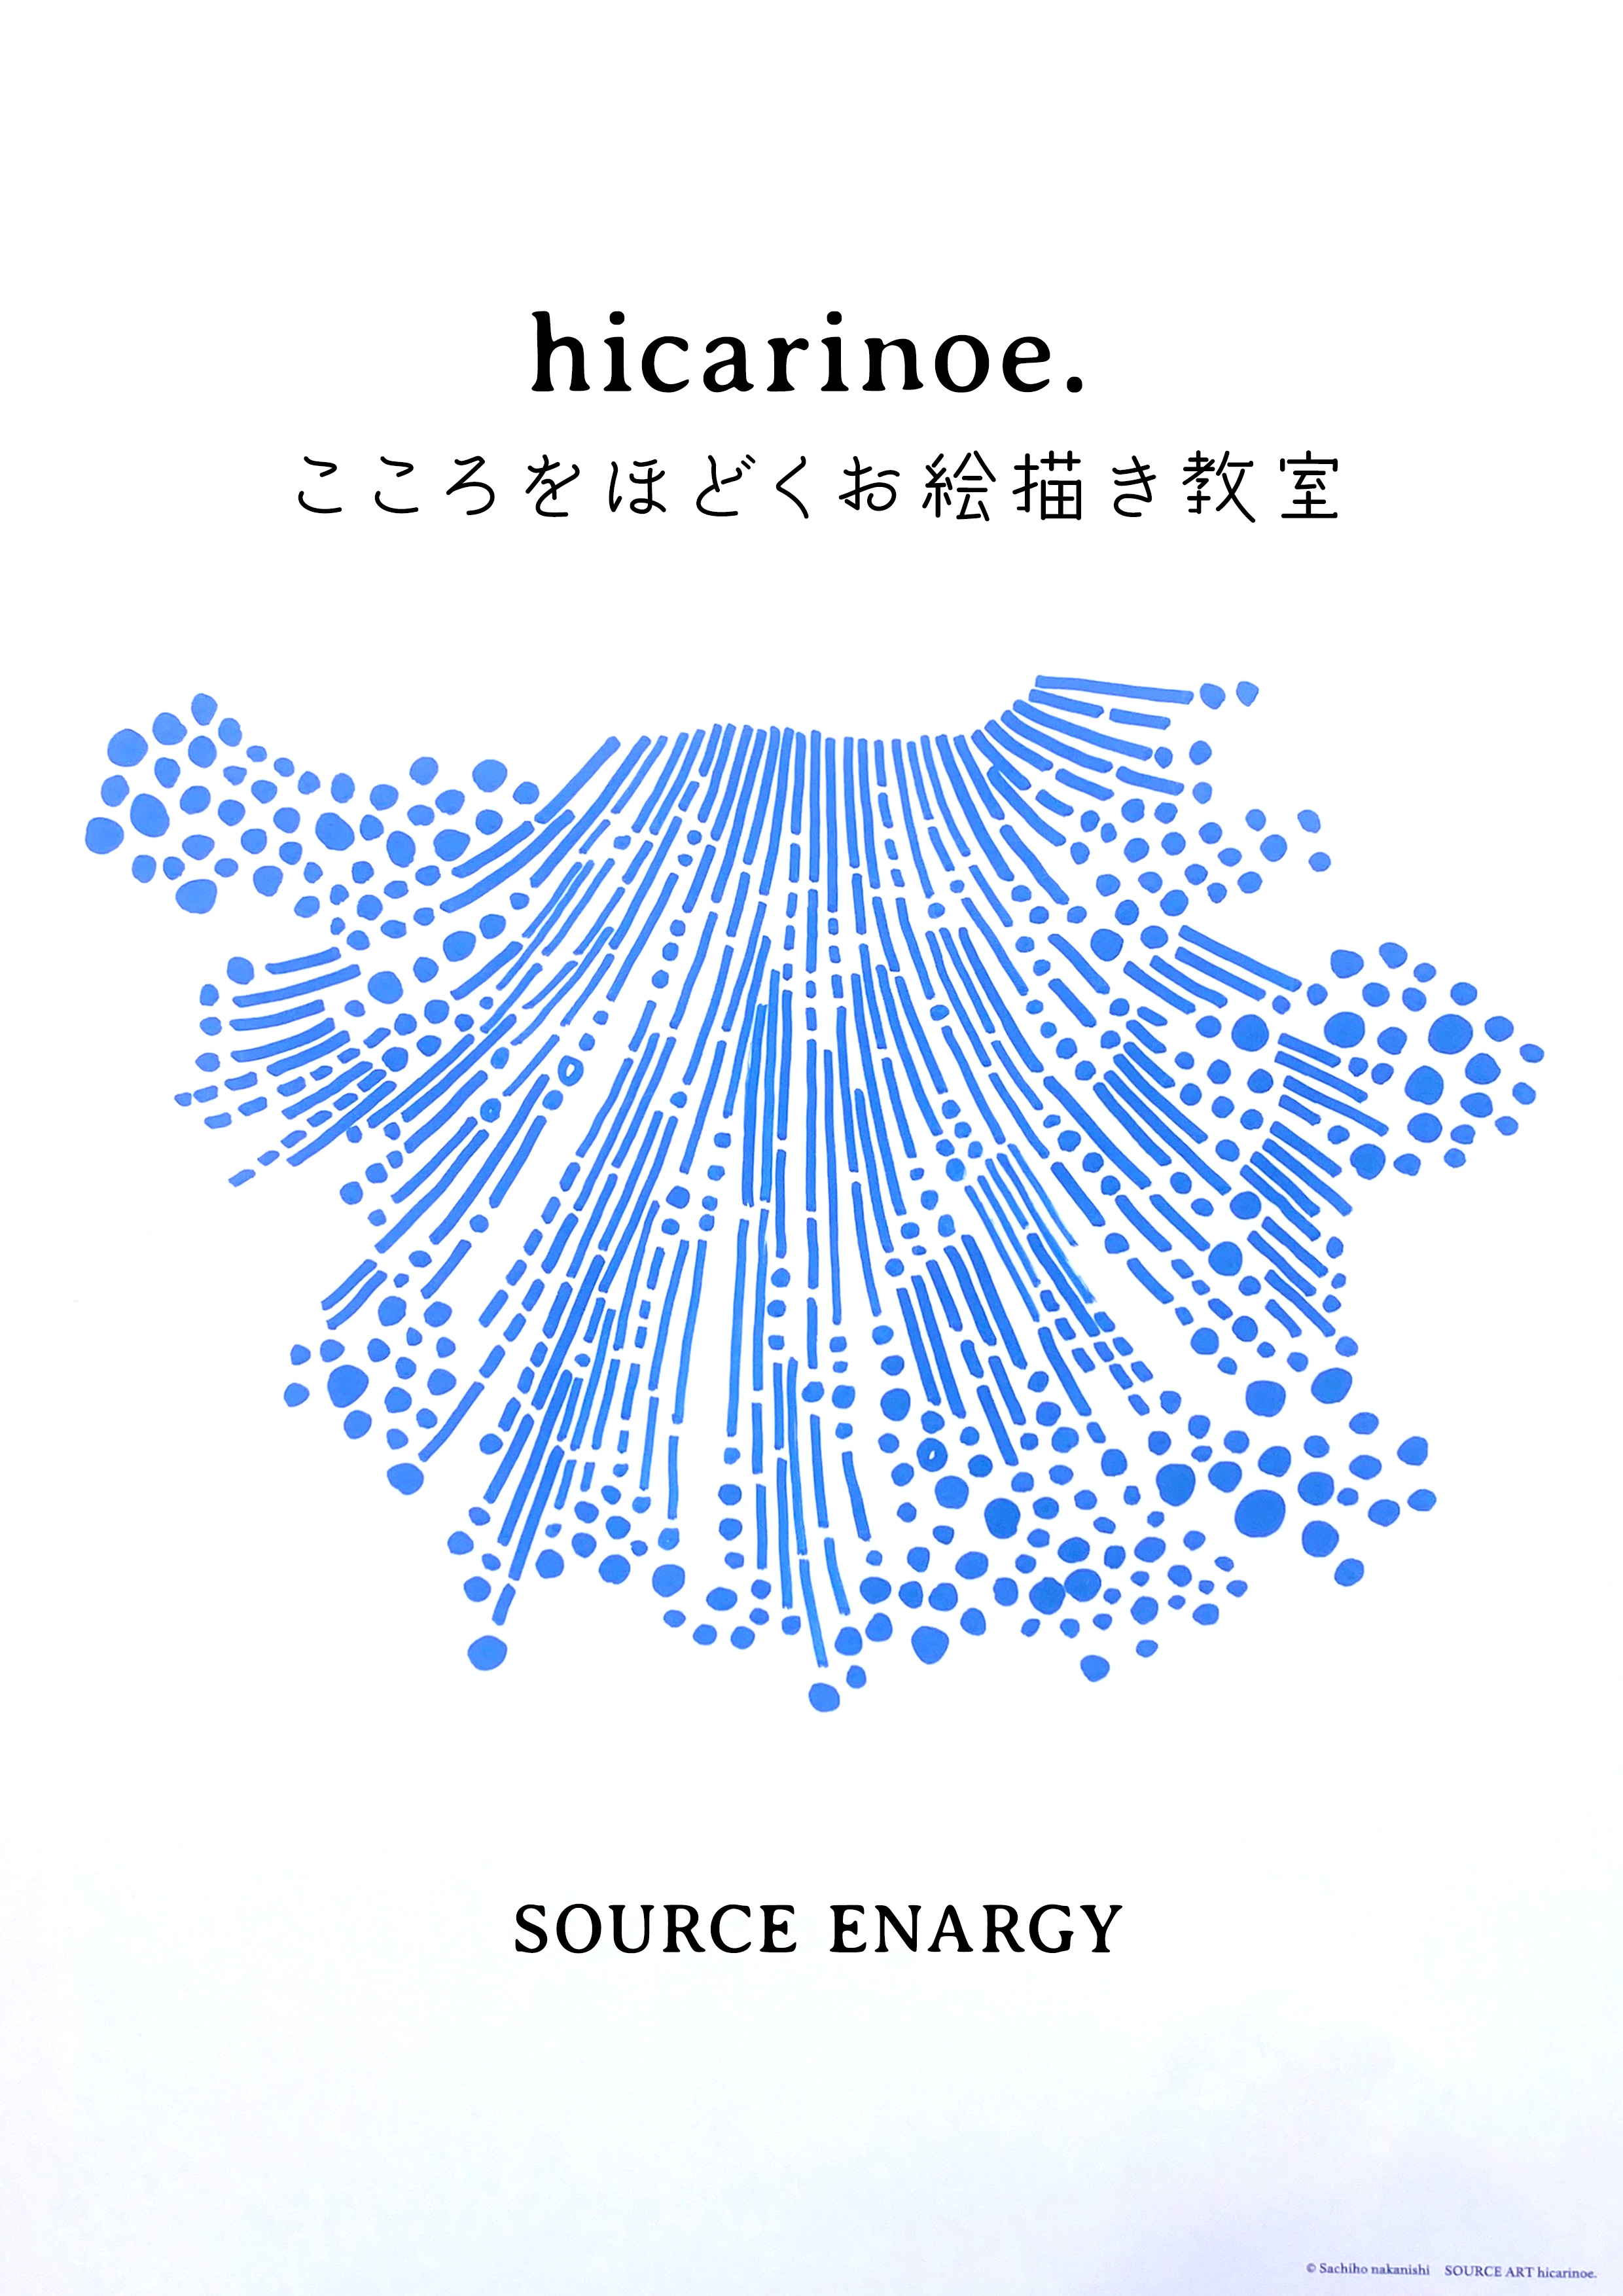 【動画レッスン】hicarinoe.こころをほどくお絵描き教室 - ソースエネルギーと繋がる -